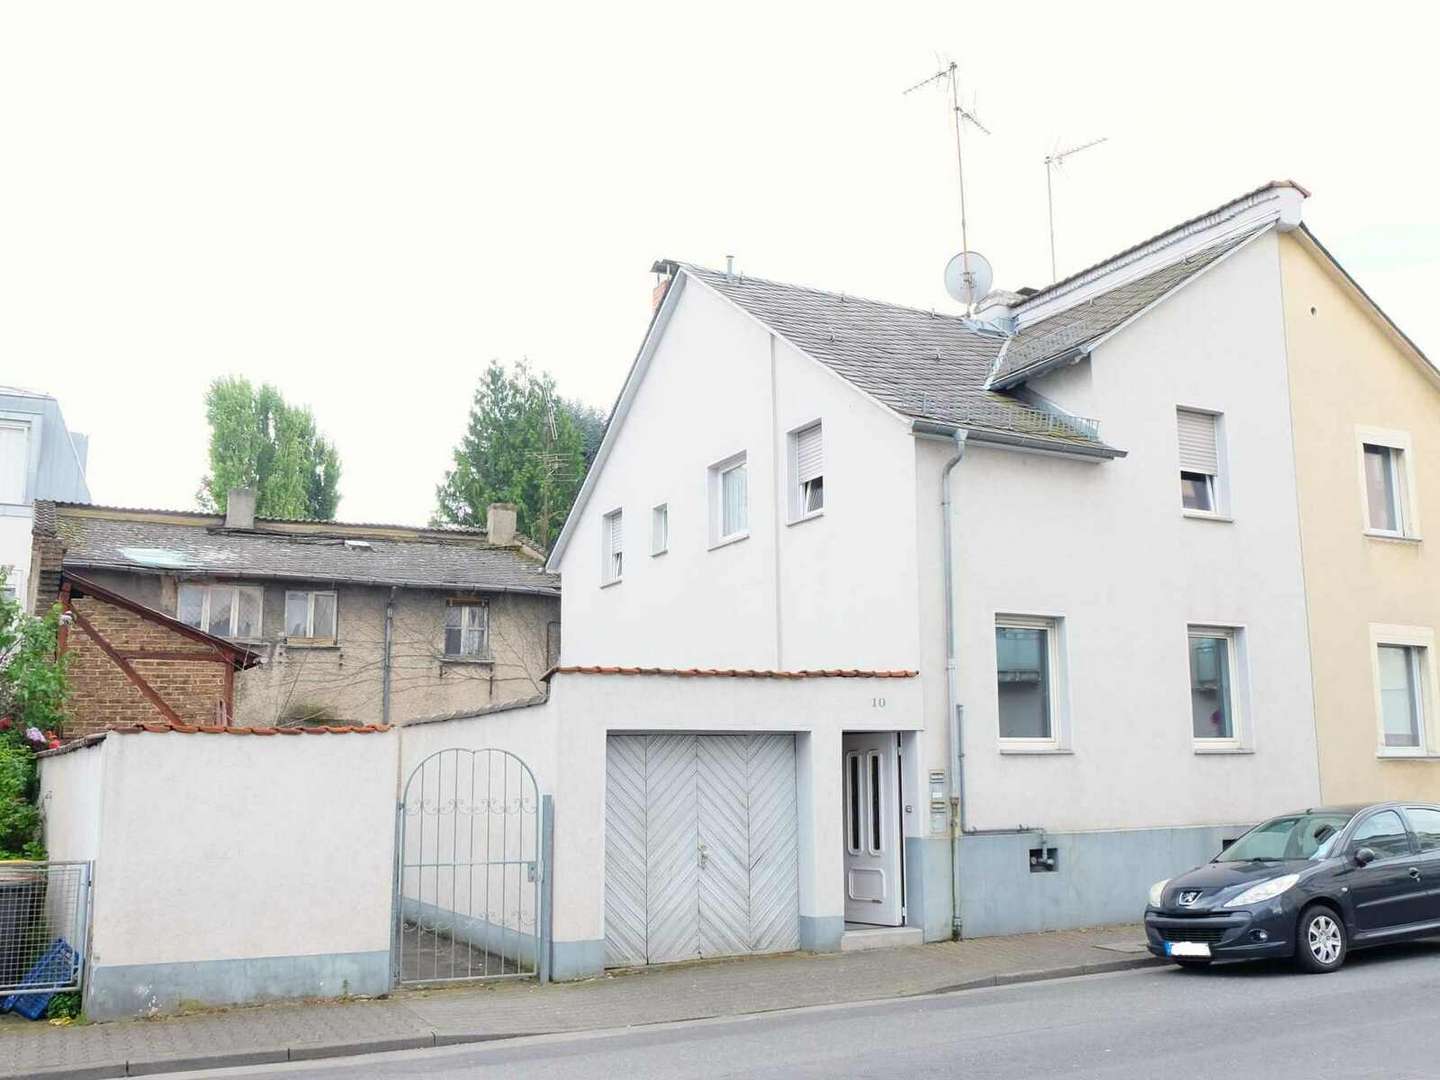 Ansicht 1 - Doppelhaushälfte in 60439 Frankfurt mit 92m² kaufen